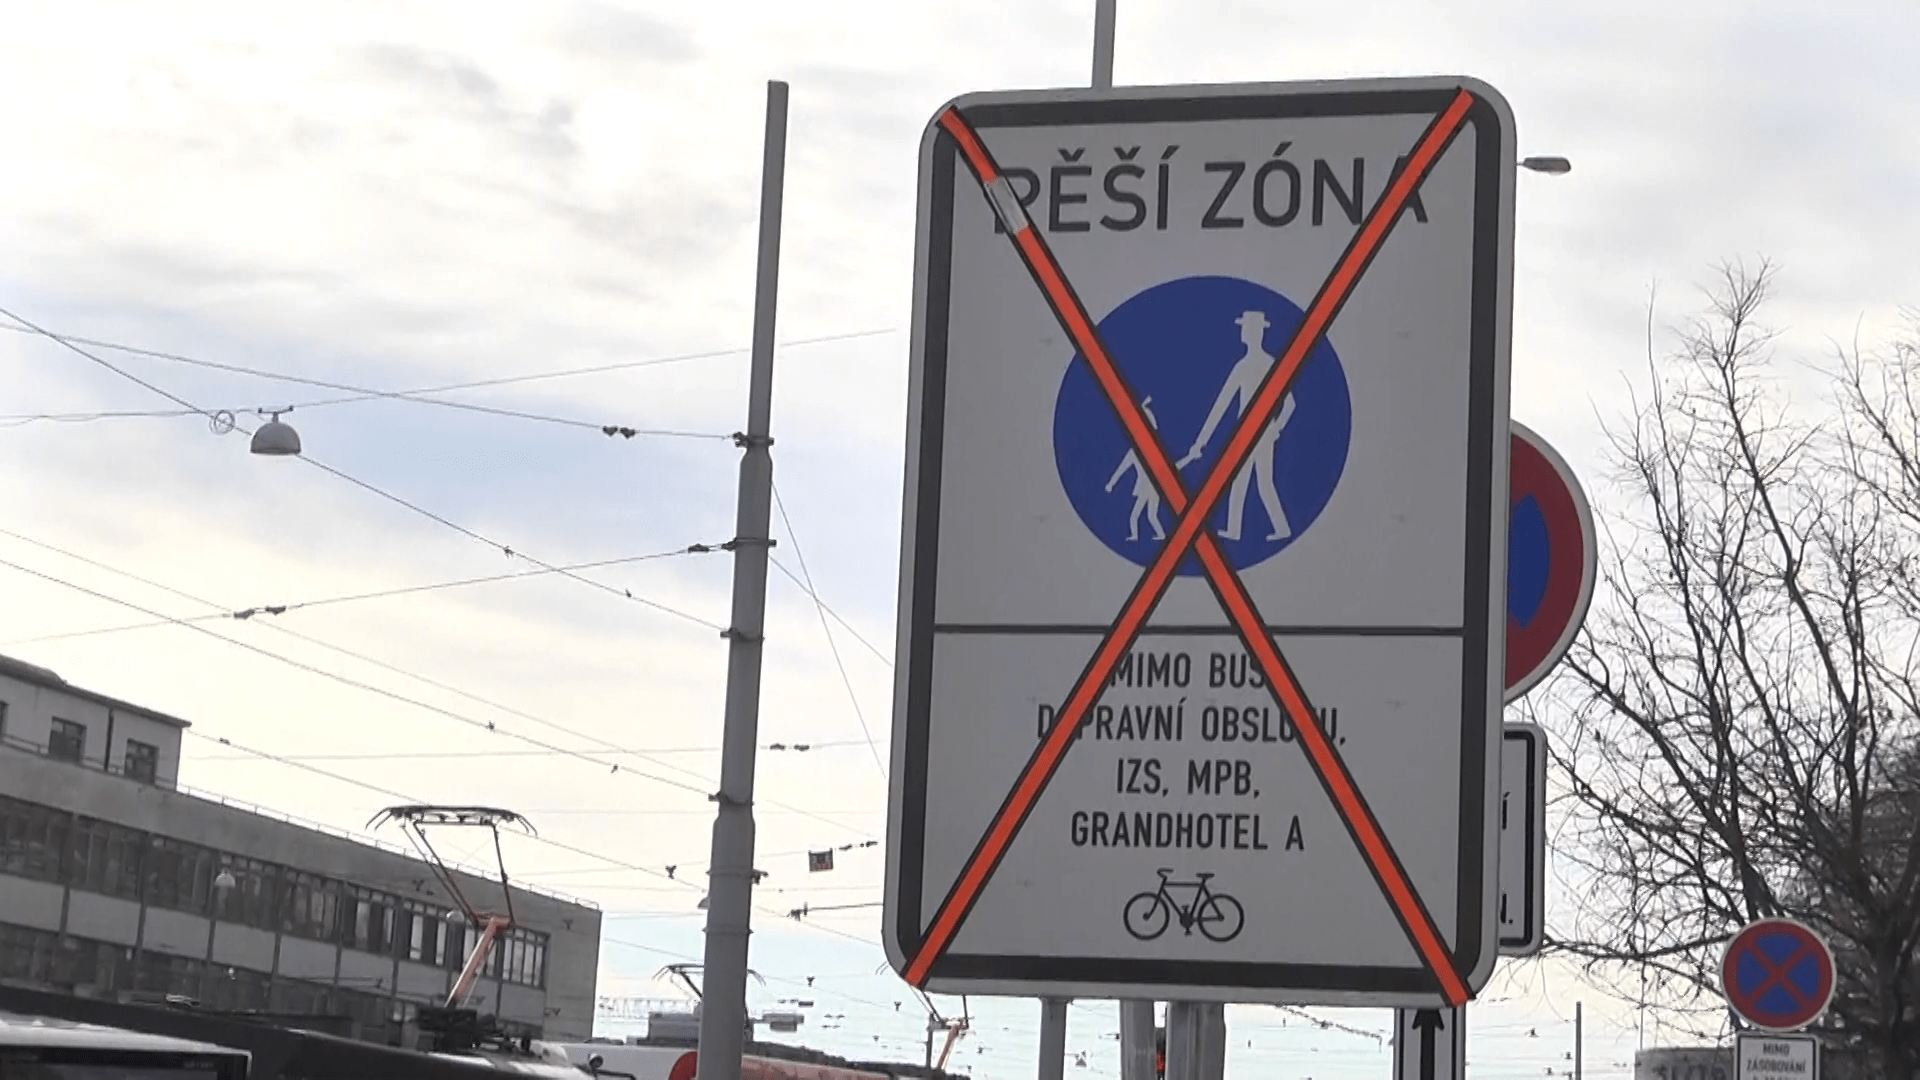 Prostory před nádražím v Brně jsou předmětem debat.